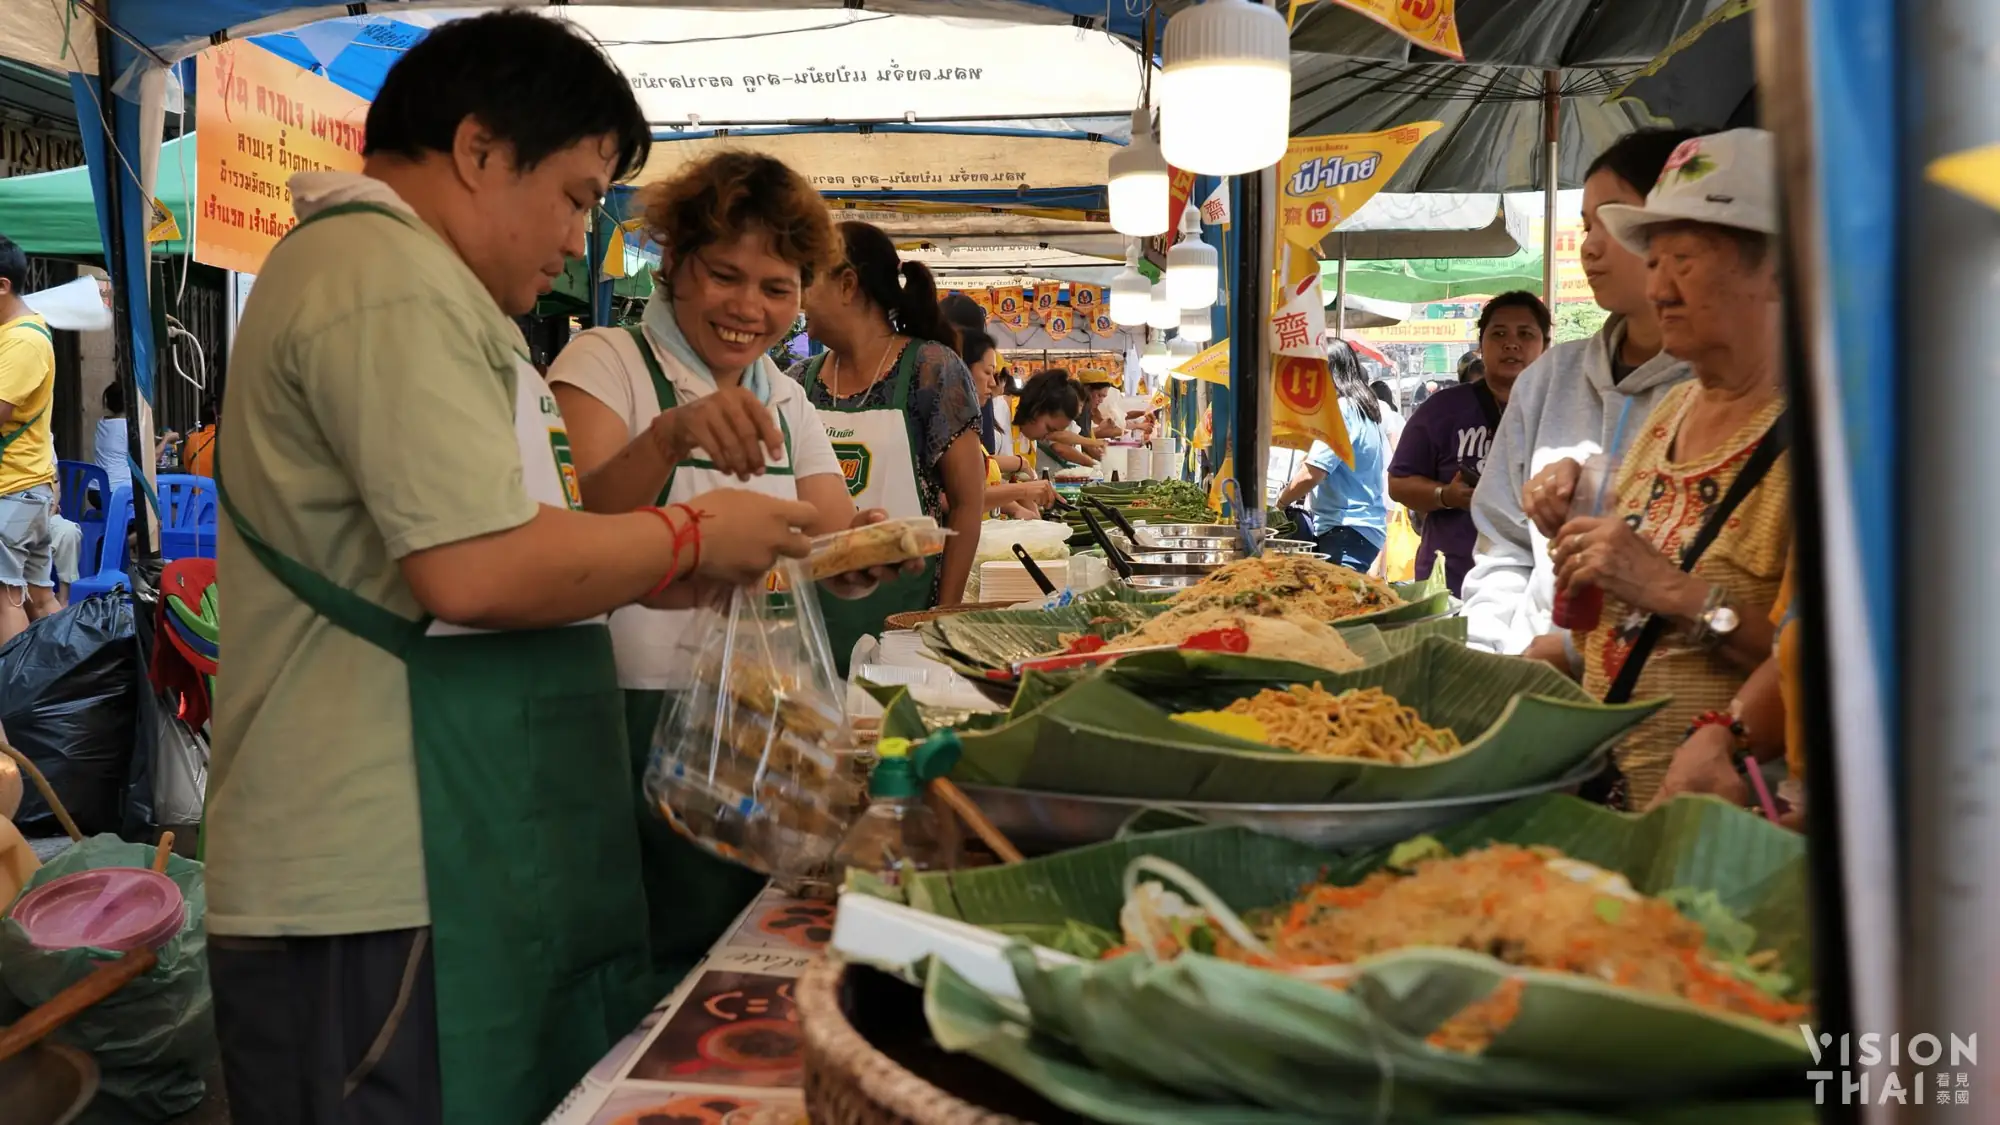 想吃斋食的民众也可以到曼谷唐人街体验节庆盛况